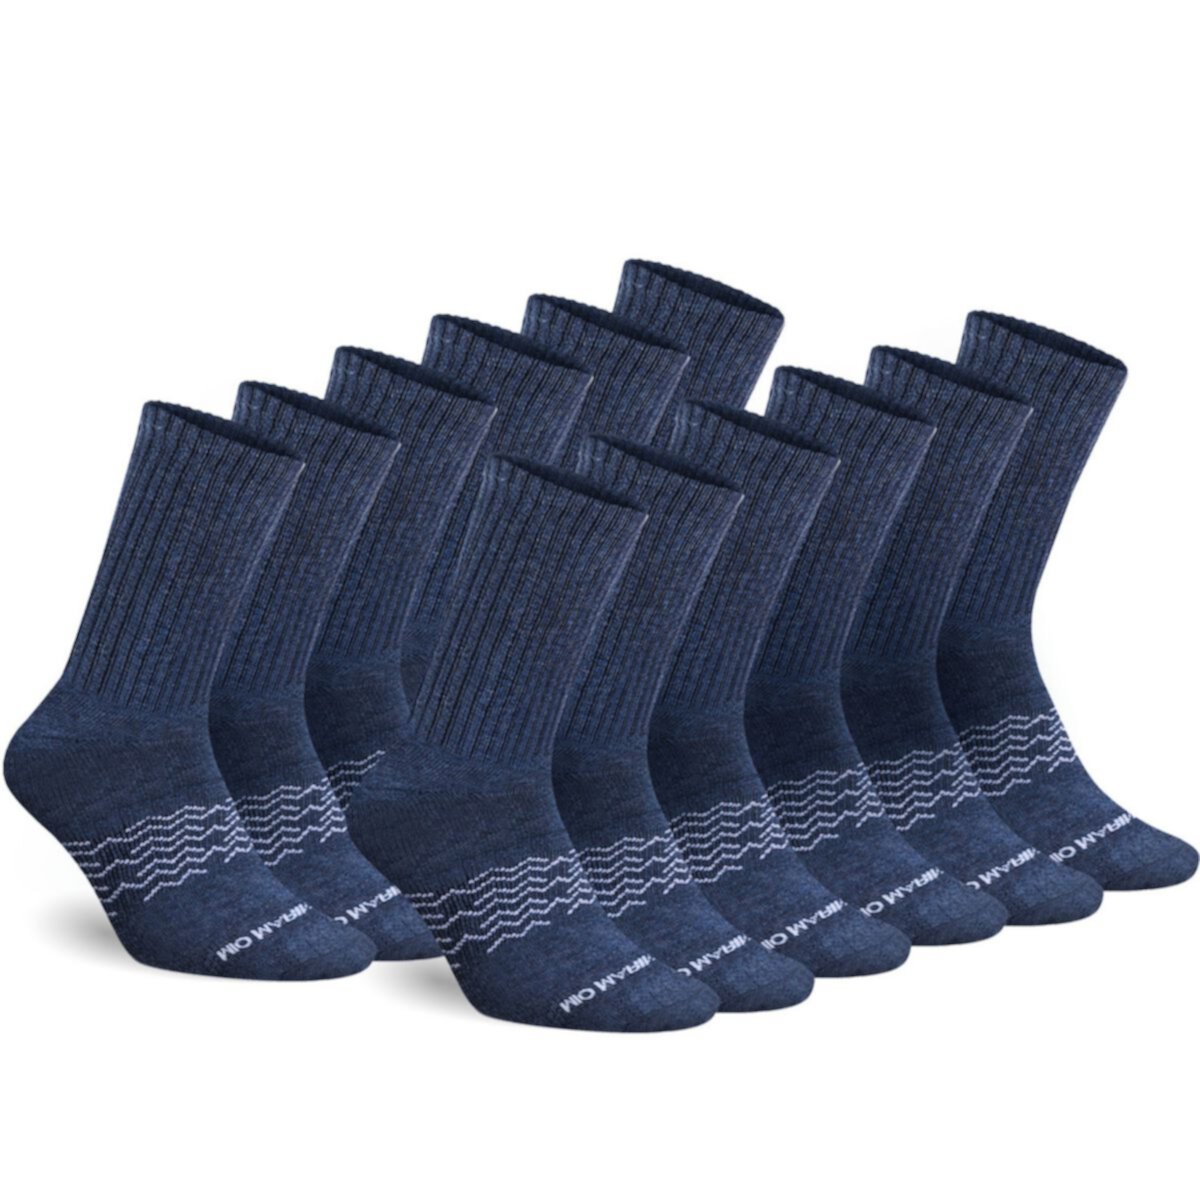 Мужские спортивные носки с контролем влажности, 12 шт. — Mio Marino — Размер: 9–11 Mio Marino